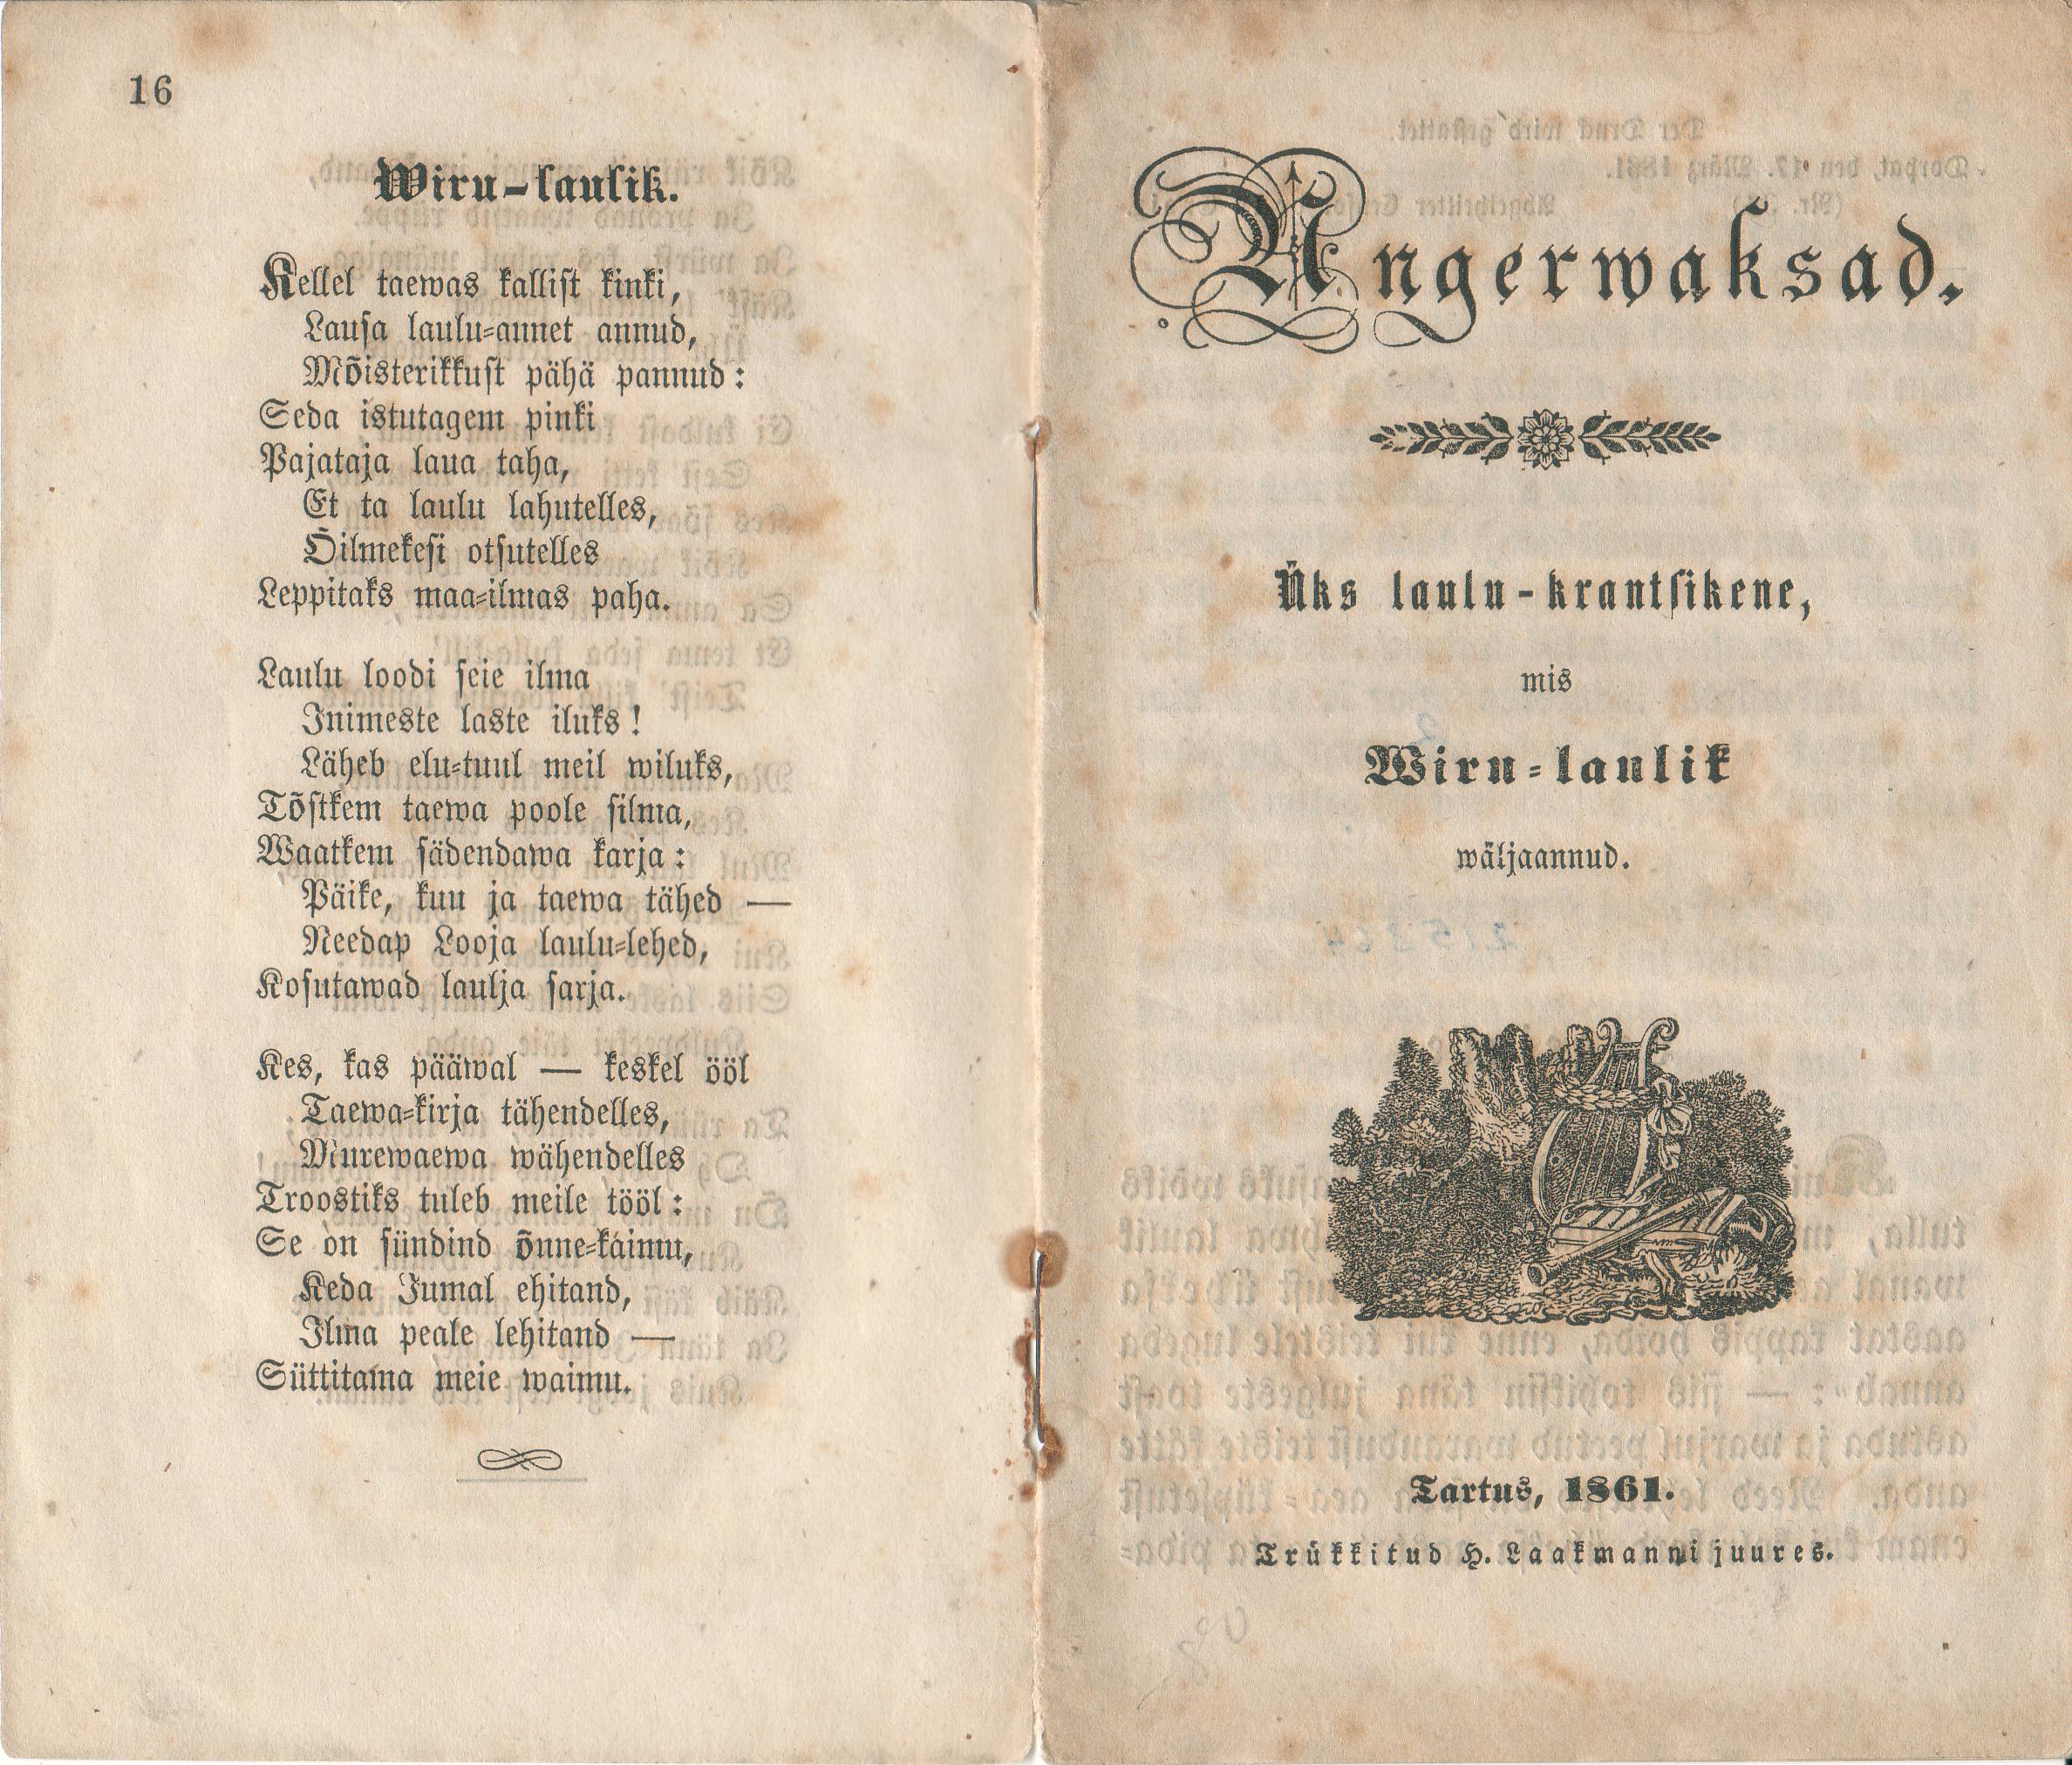 Angerwaksad (1861) | 1. (16) Titelblatt